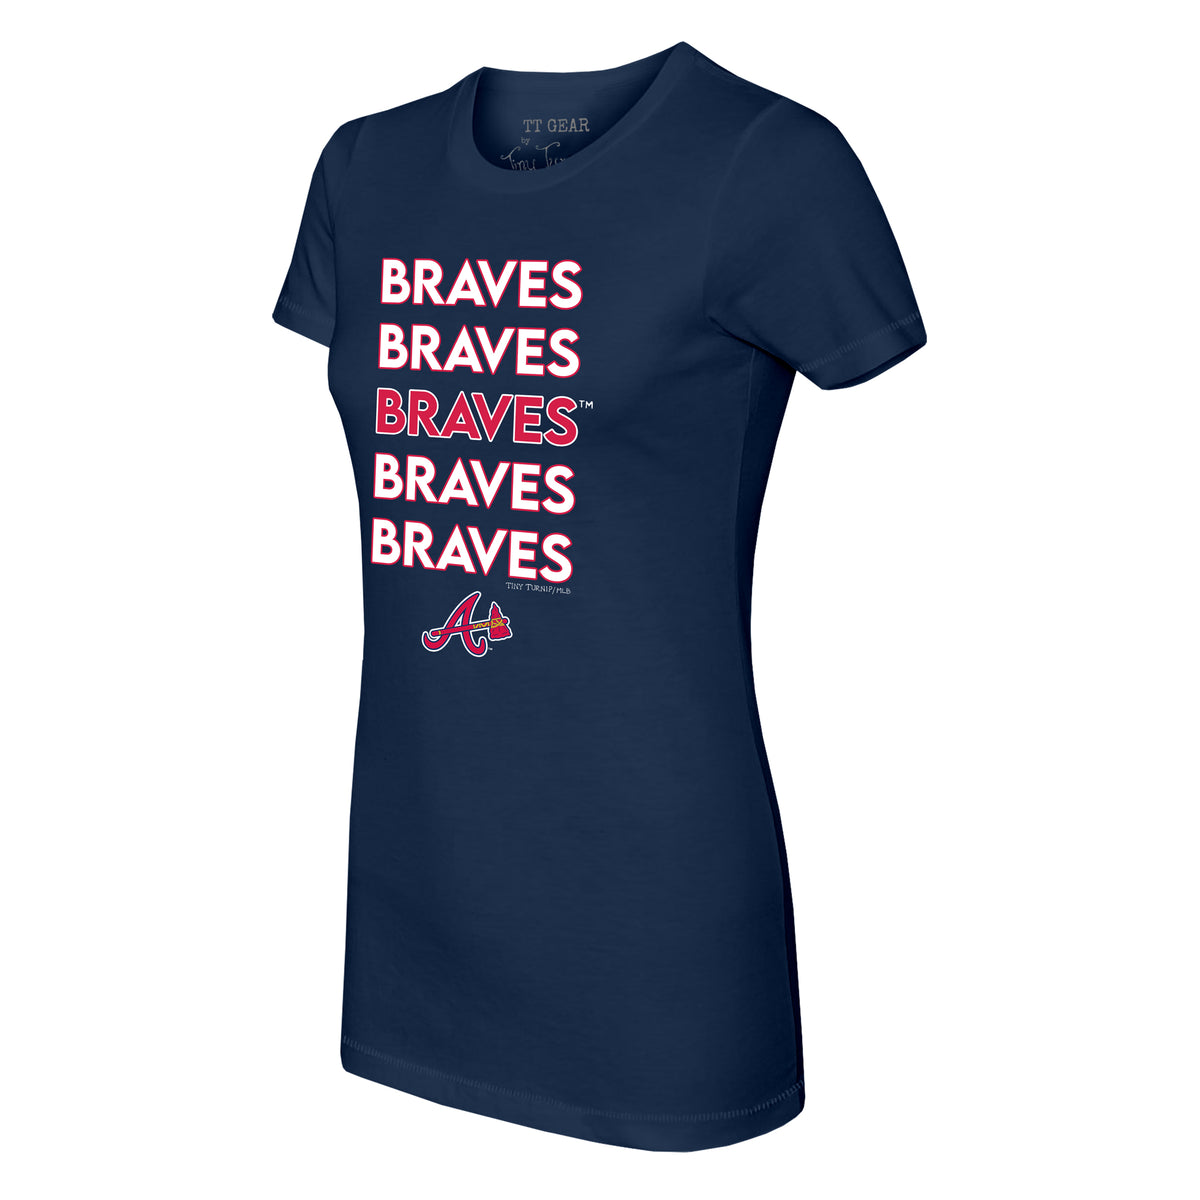 Atlanta Braves Girls Baseball Jersey Shirt Size Large (10-12) Girls Kids  Shirt